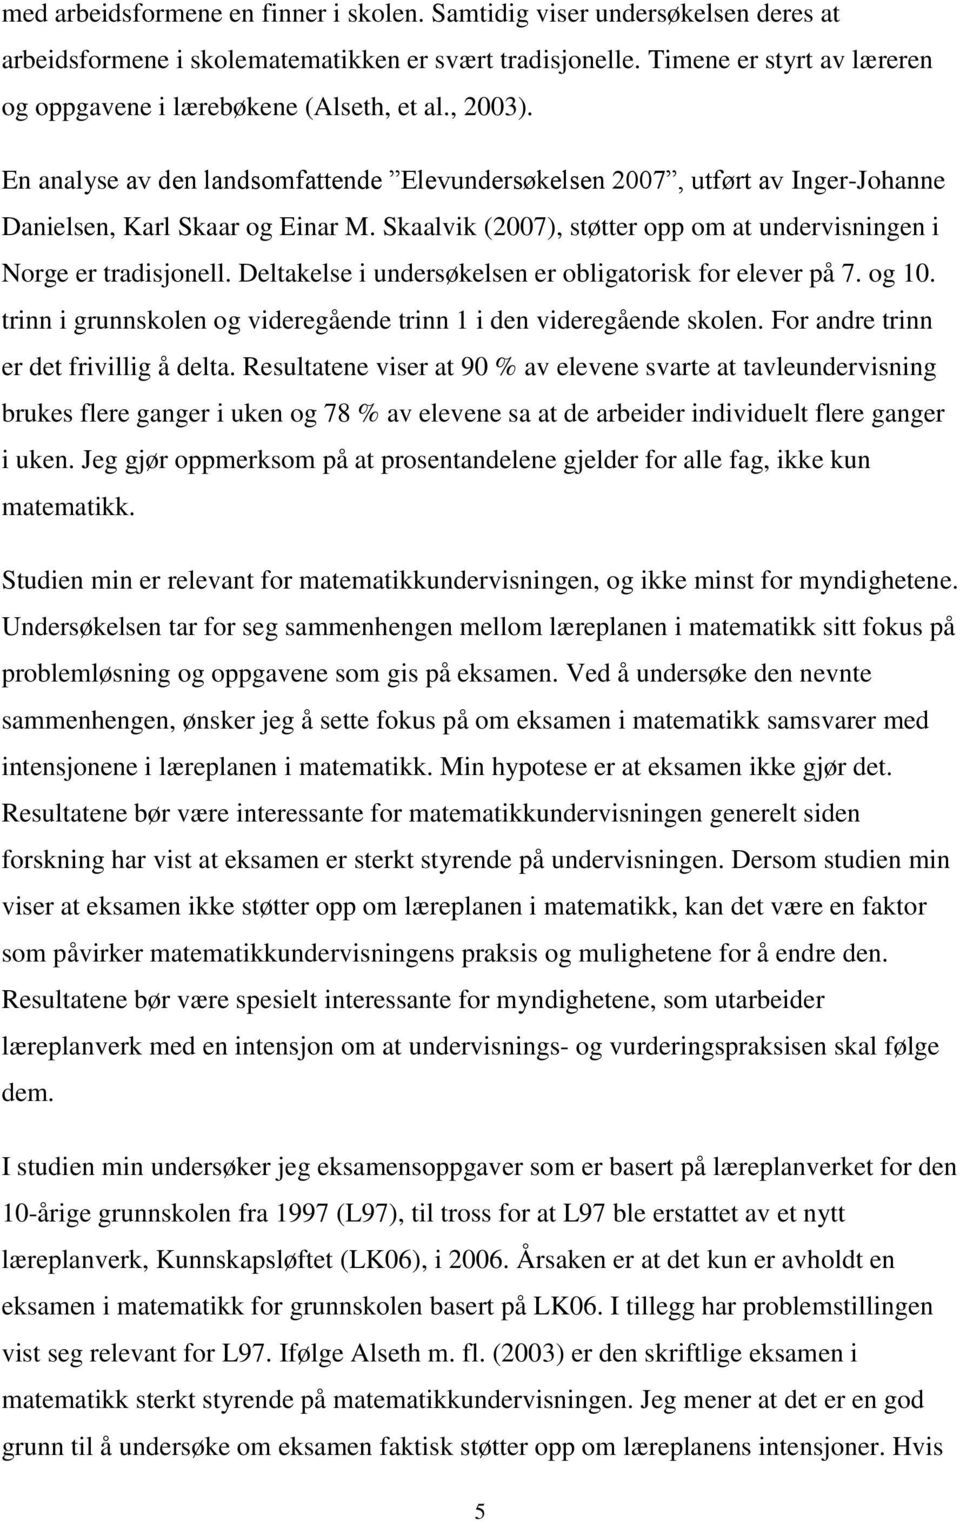 Skaalvik (2007), støtter opp om at undervisningen i Norge er tradisjonell. Deltakelse i undersøkelsen er obligatorisk for elever på 7. og 10.